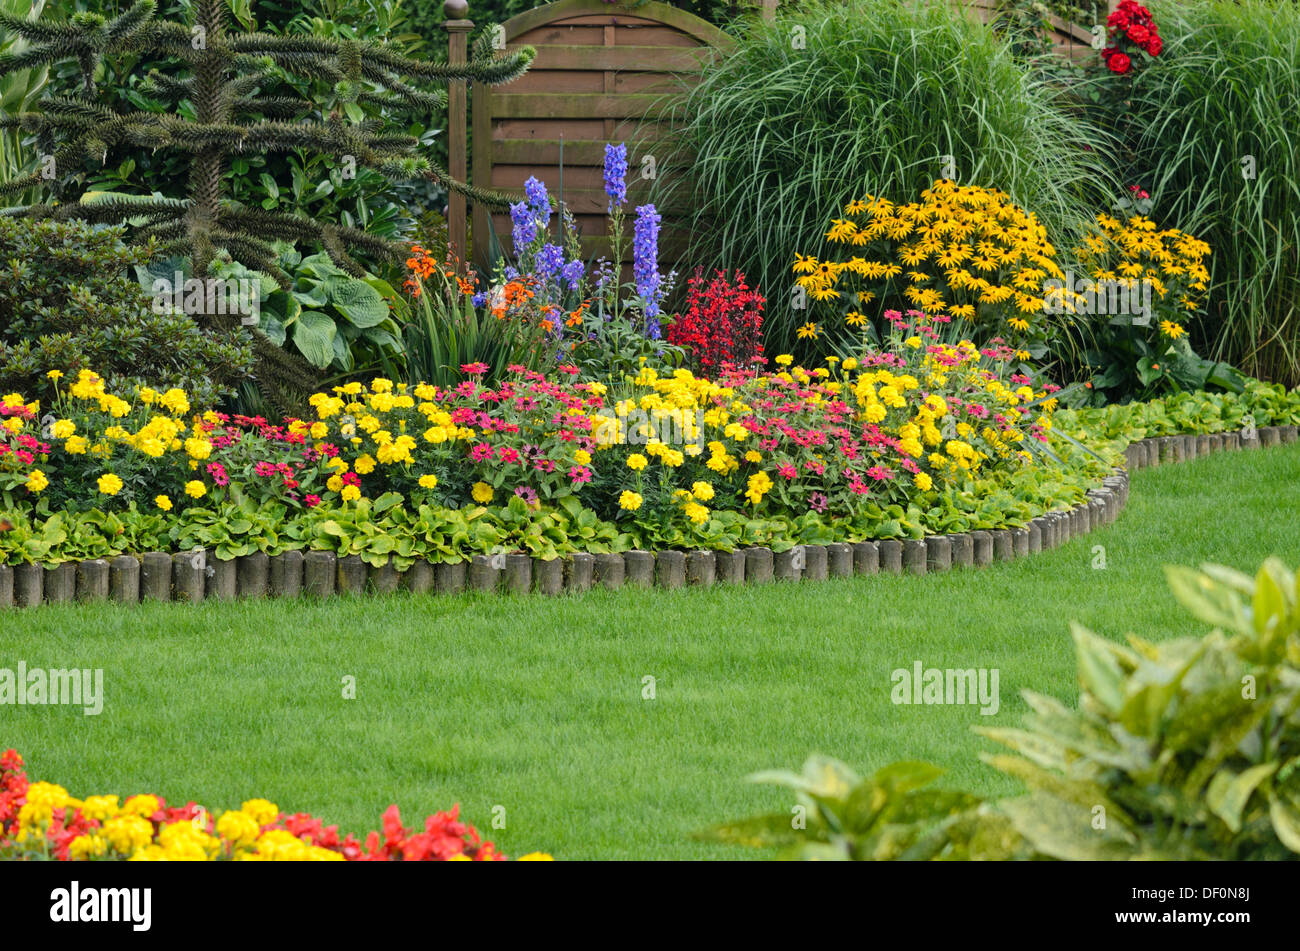 Les œillets d'Inde (Tagetes), (Les zinnias zinnia), larkspurs (delphinium) et le cône fleurs (Rudbeckia) Banque D'Images